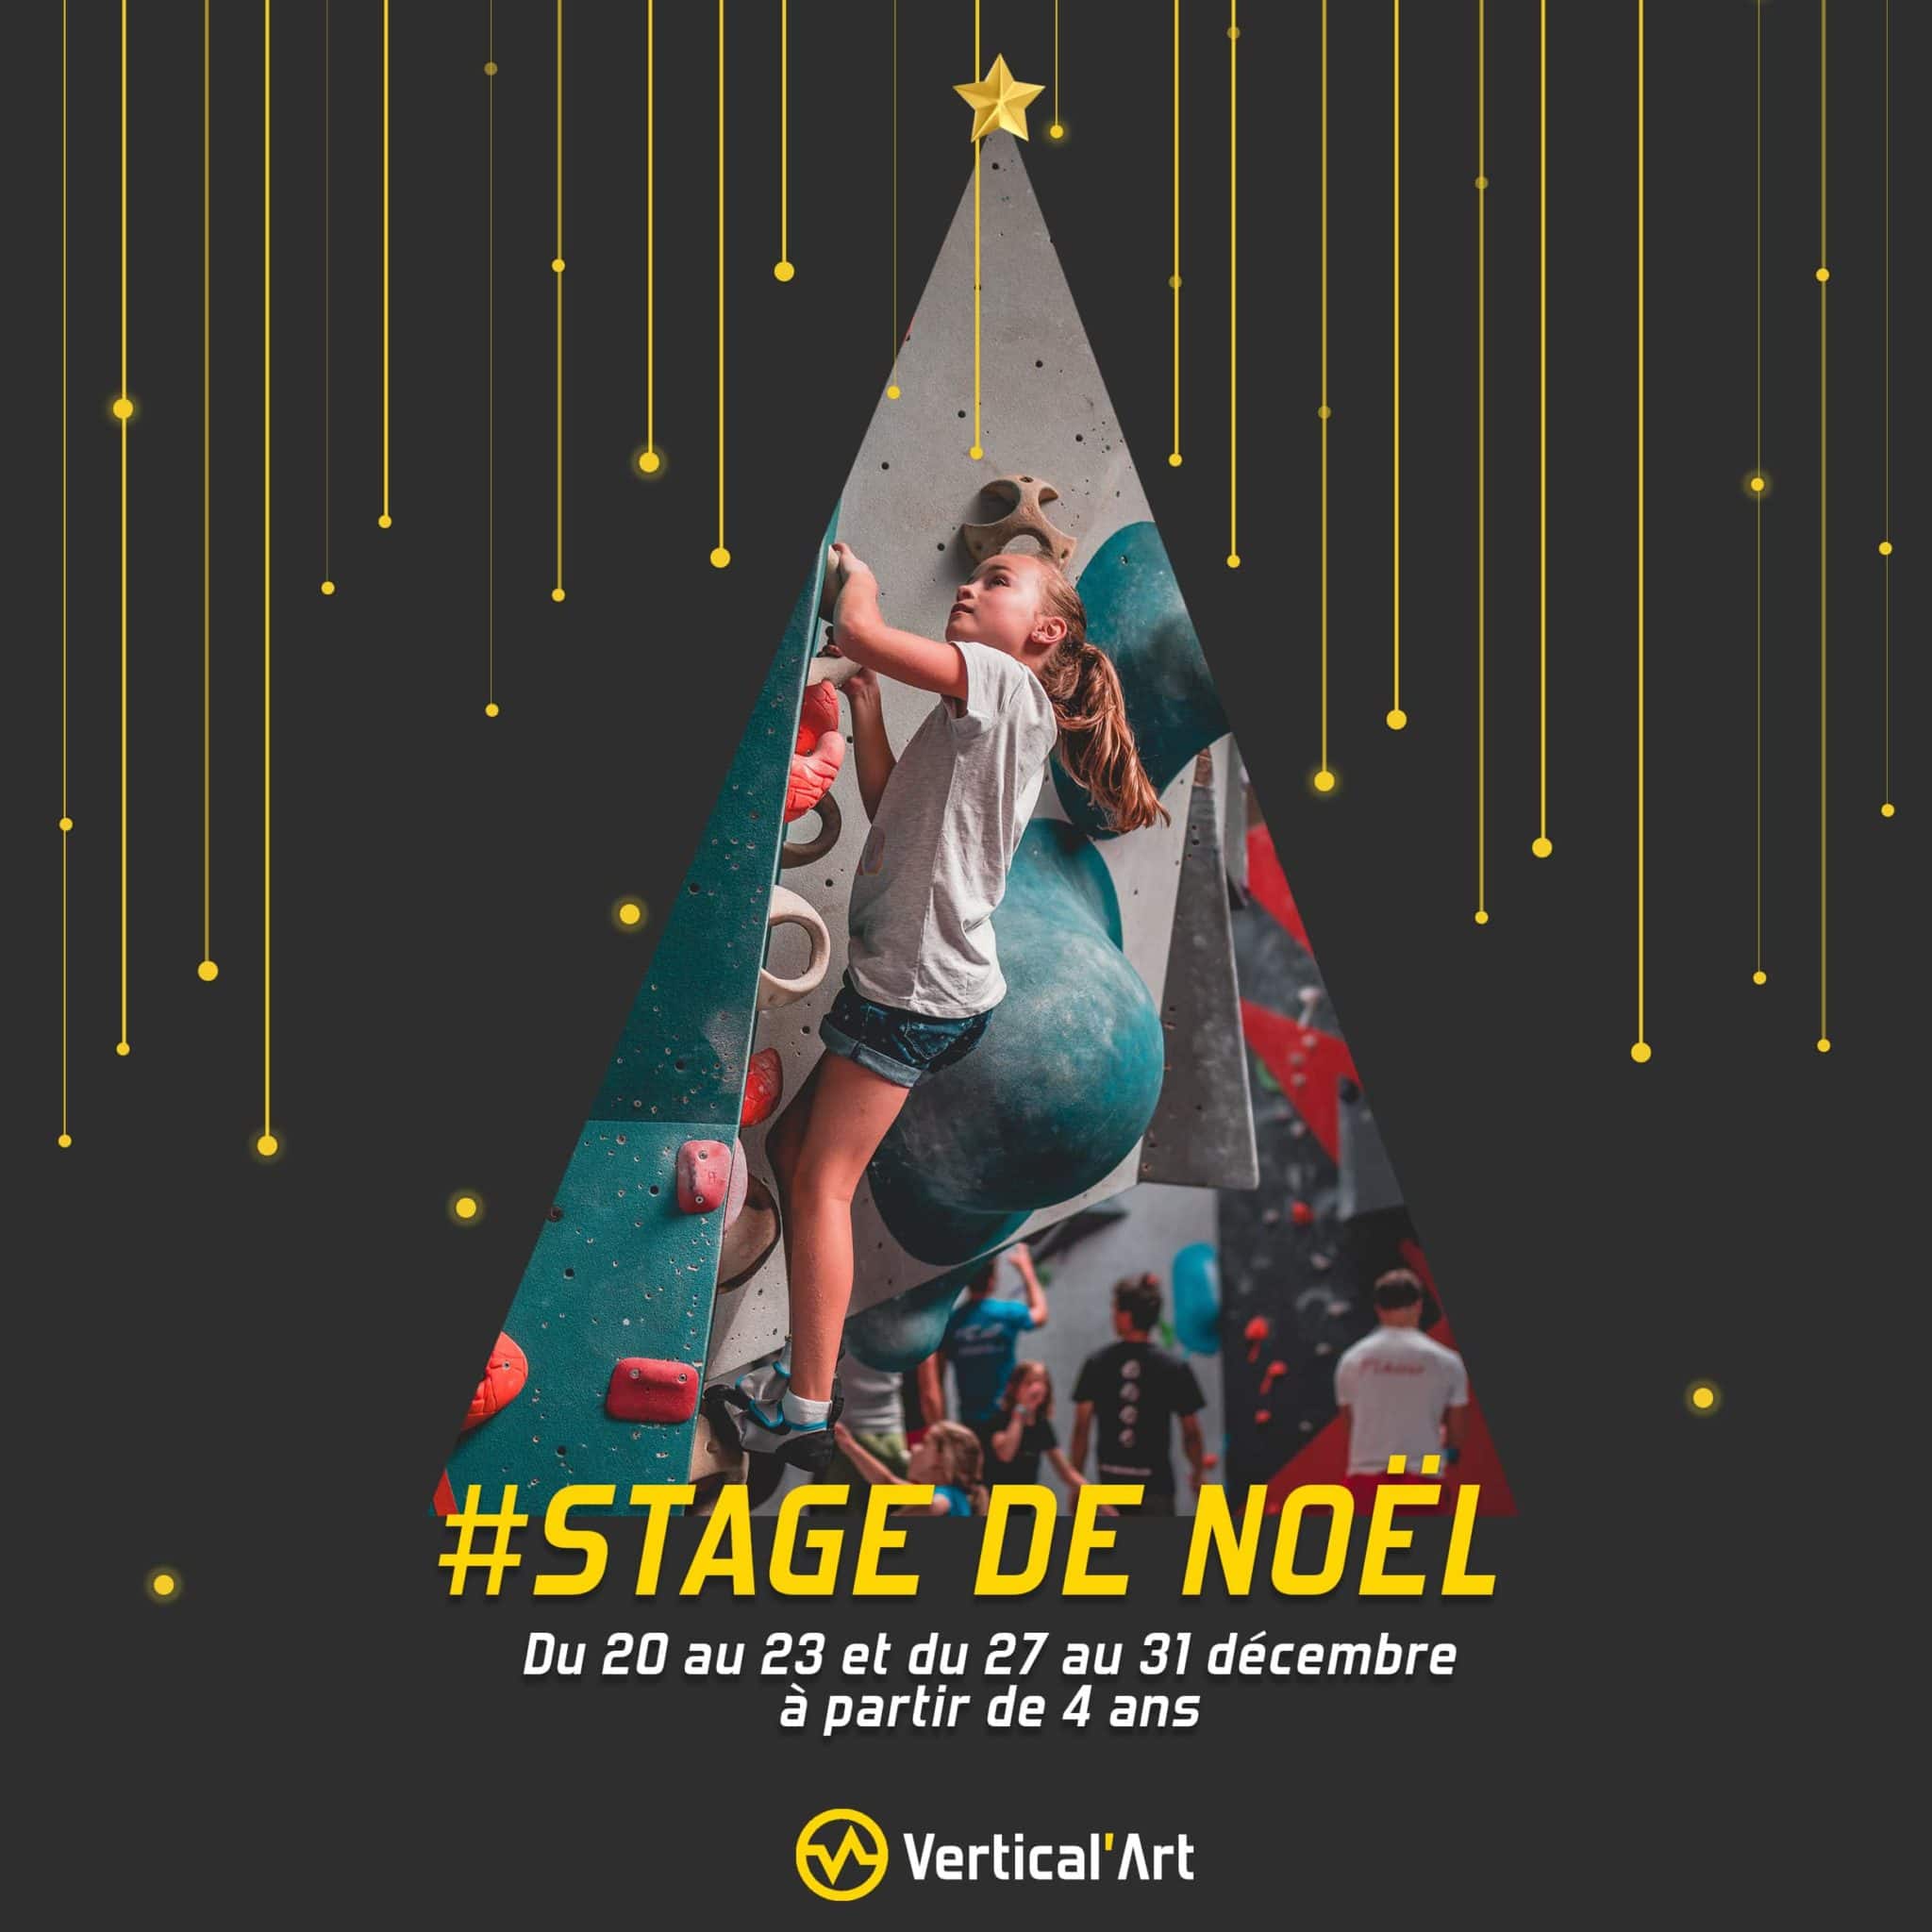 Stage d'escalade enfants Noël 2021 à Vertical'Art Paris Chevaleret, du 20 au 23/12 et du 27 au 31/12 à partir de 4 ans